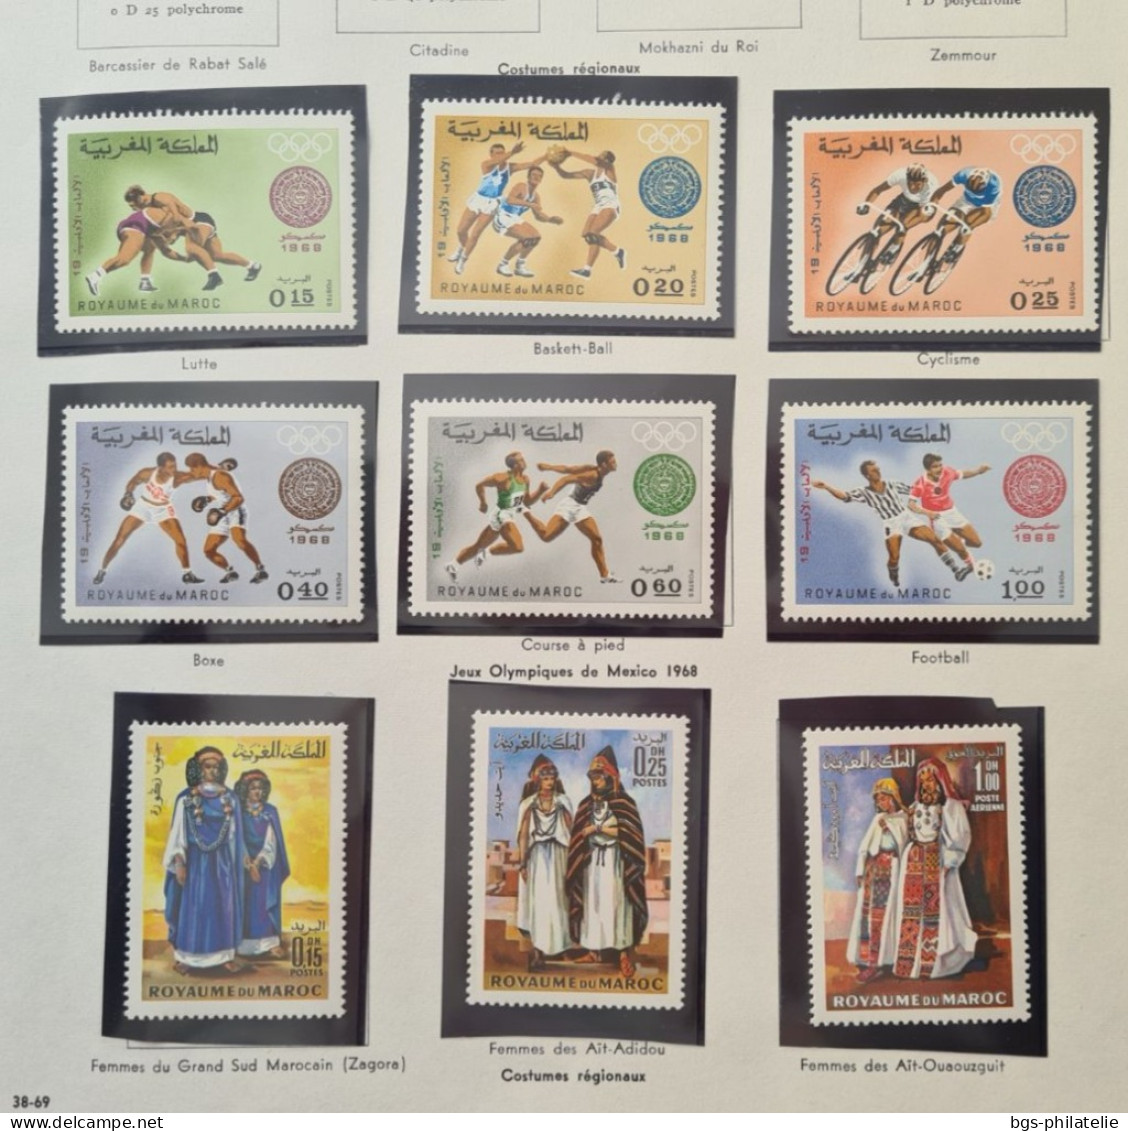 Collection de timbres du Maroc neufs ** , neufs * et quelques oblitérés.